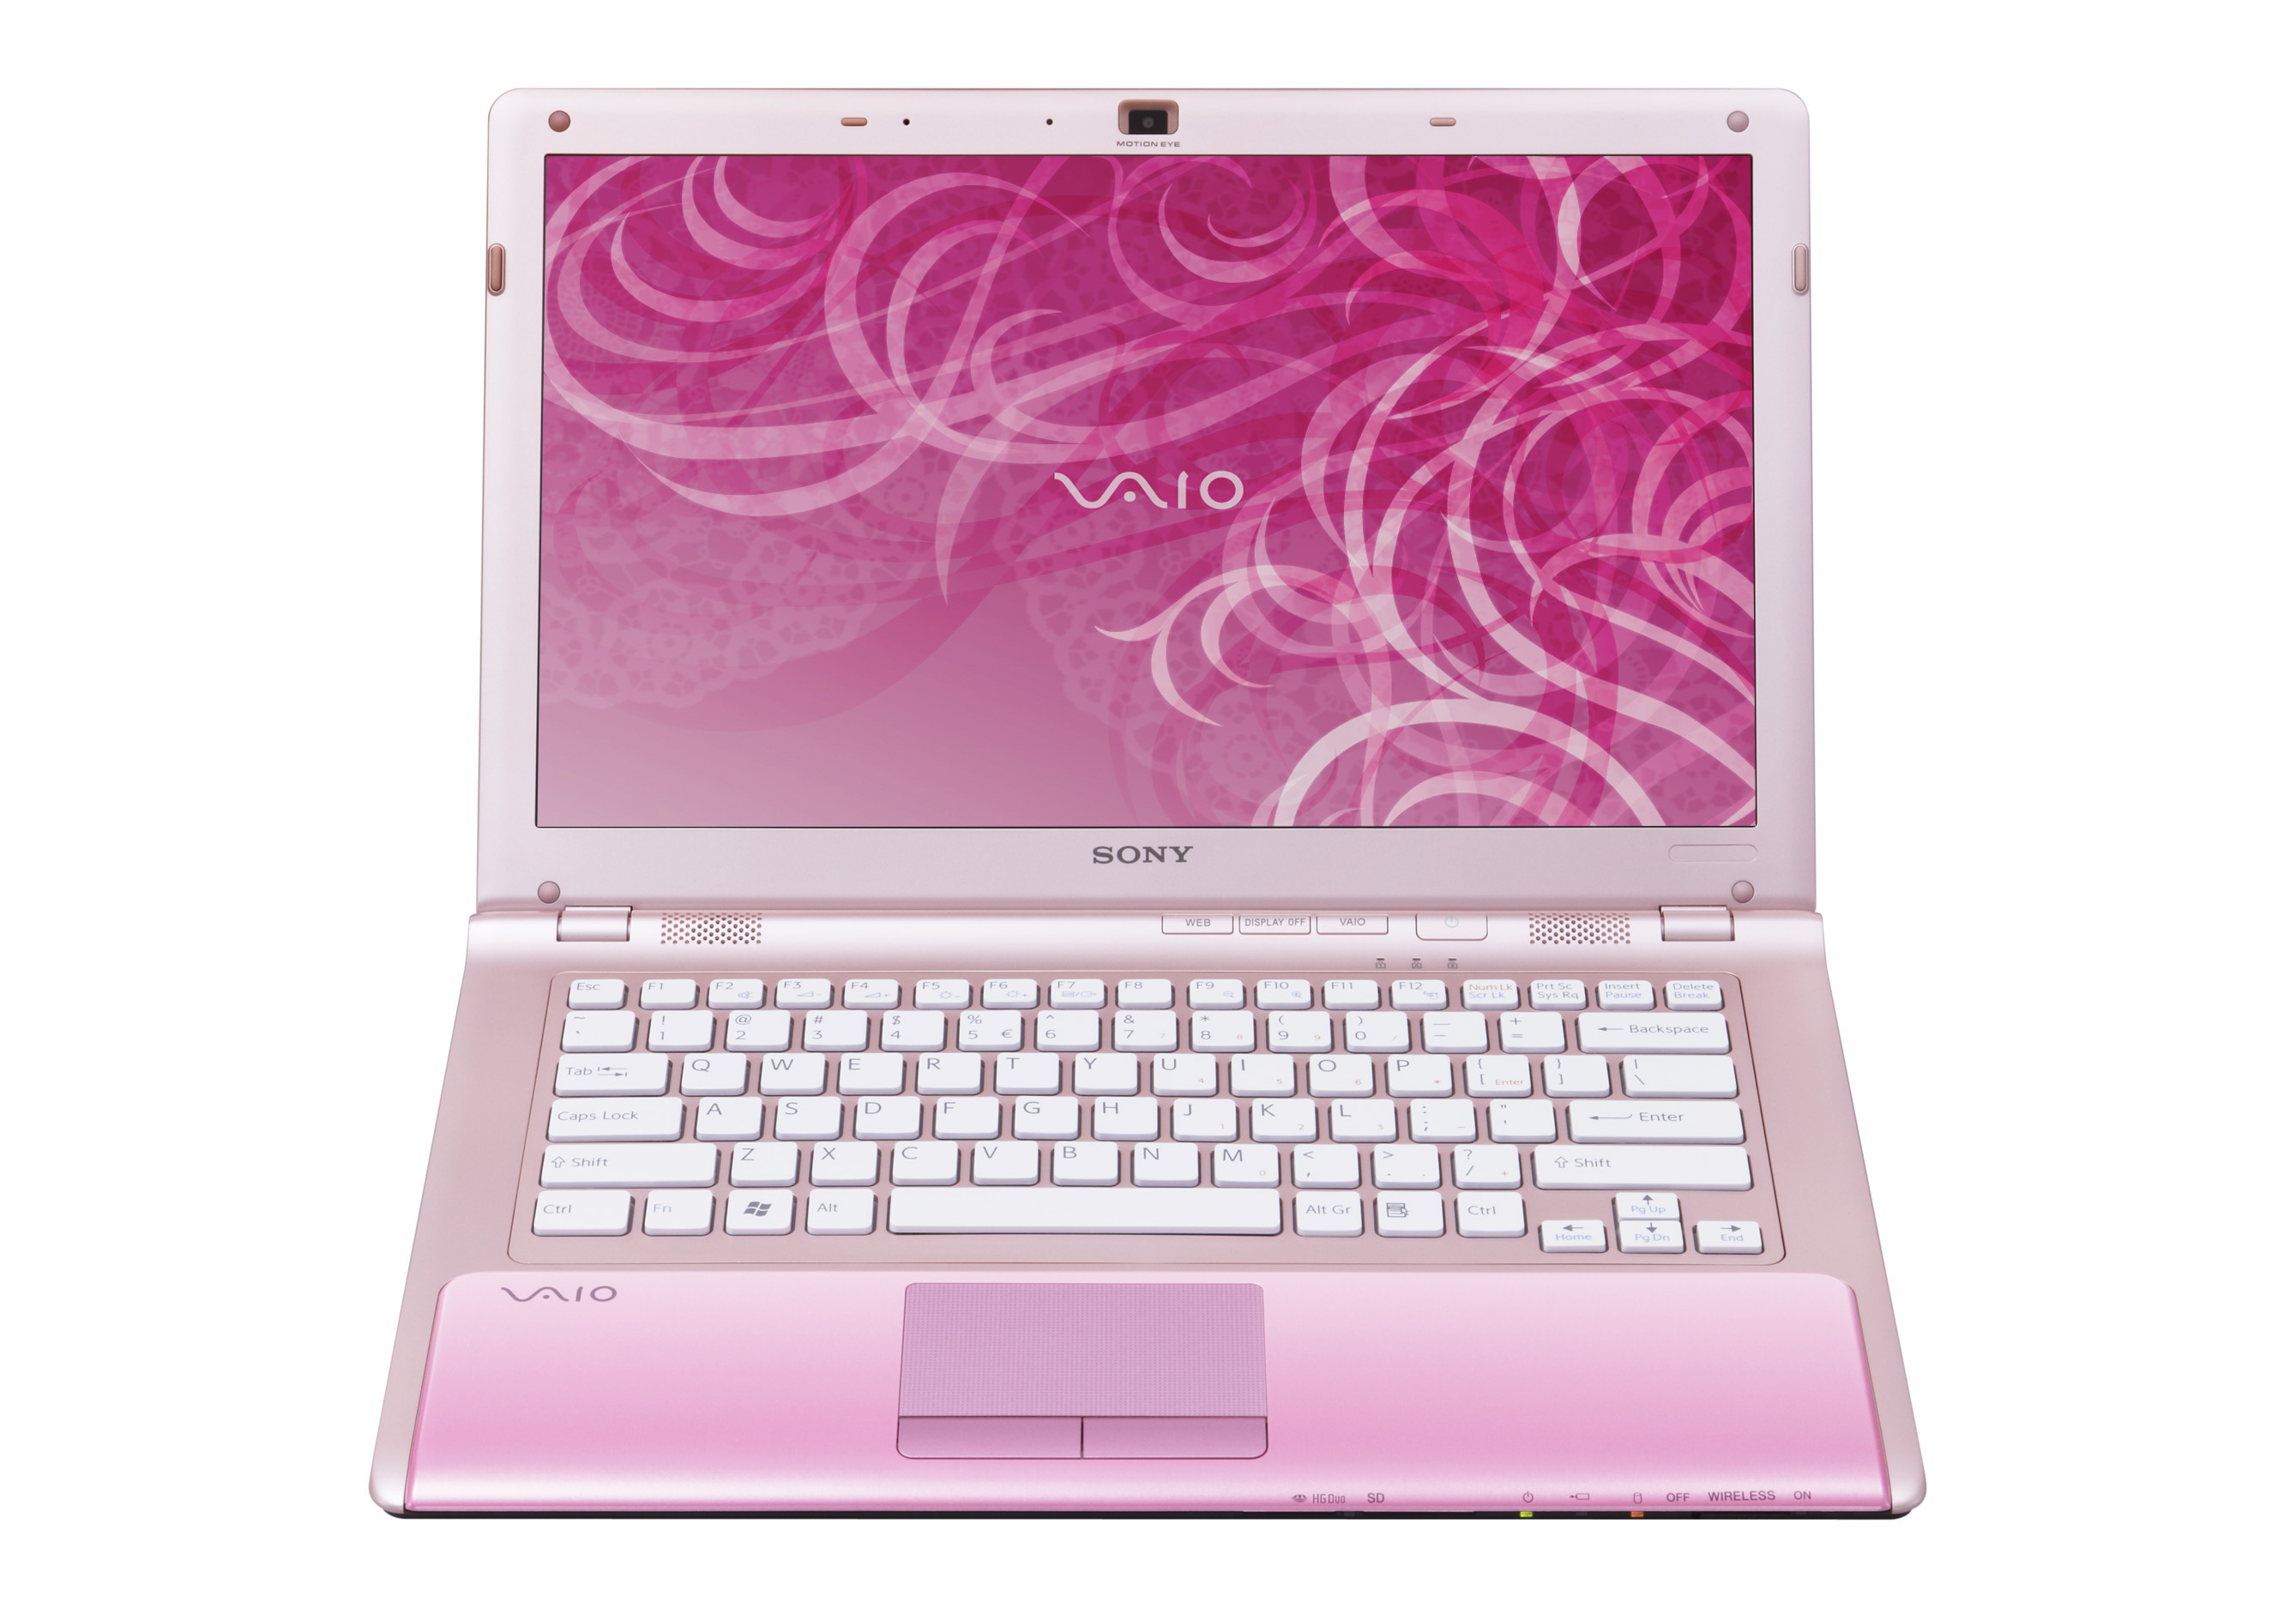 Розовый экран ноутбука. Сони Вайо нетбук розовый. Sony vpccw2s1r. Нетбук Sony VAIO розовый. Sony VAIO vpccw2s1r.